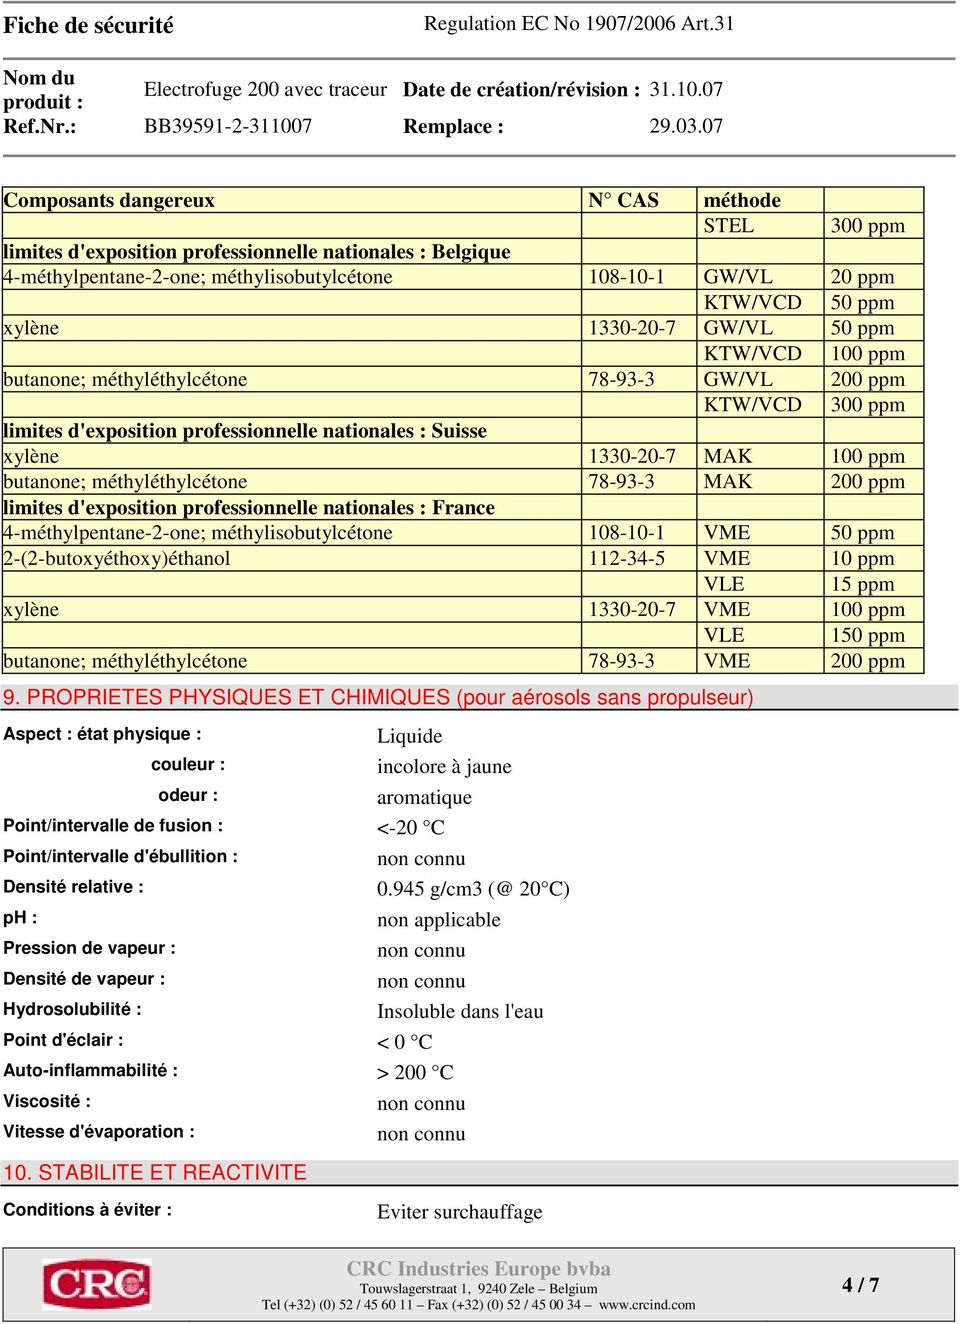 butanone; méthyléthylcétone 78-93-3 MAK 200 ppm limites d'exposition professionnelle nationales : France 4-méthylpentane-2-one; méthylisobutylcétone 108-10-1 VME 50 ppm 2-(2-butoxyéthoxy)éthanol